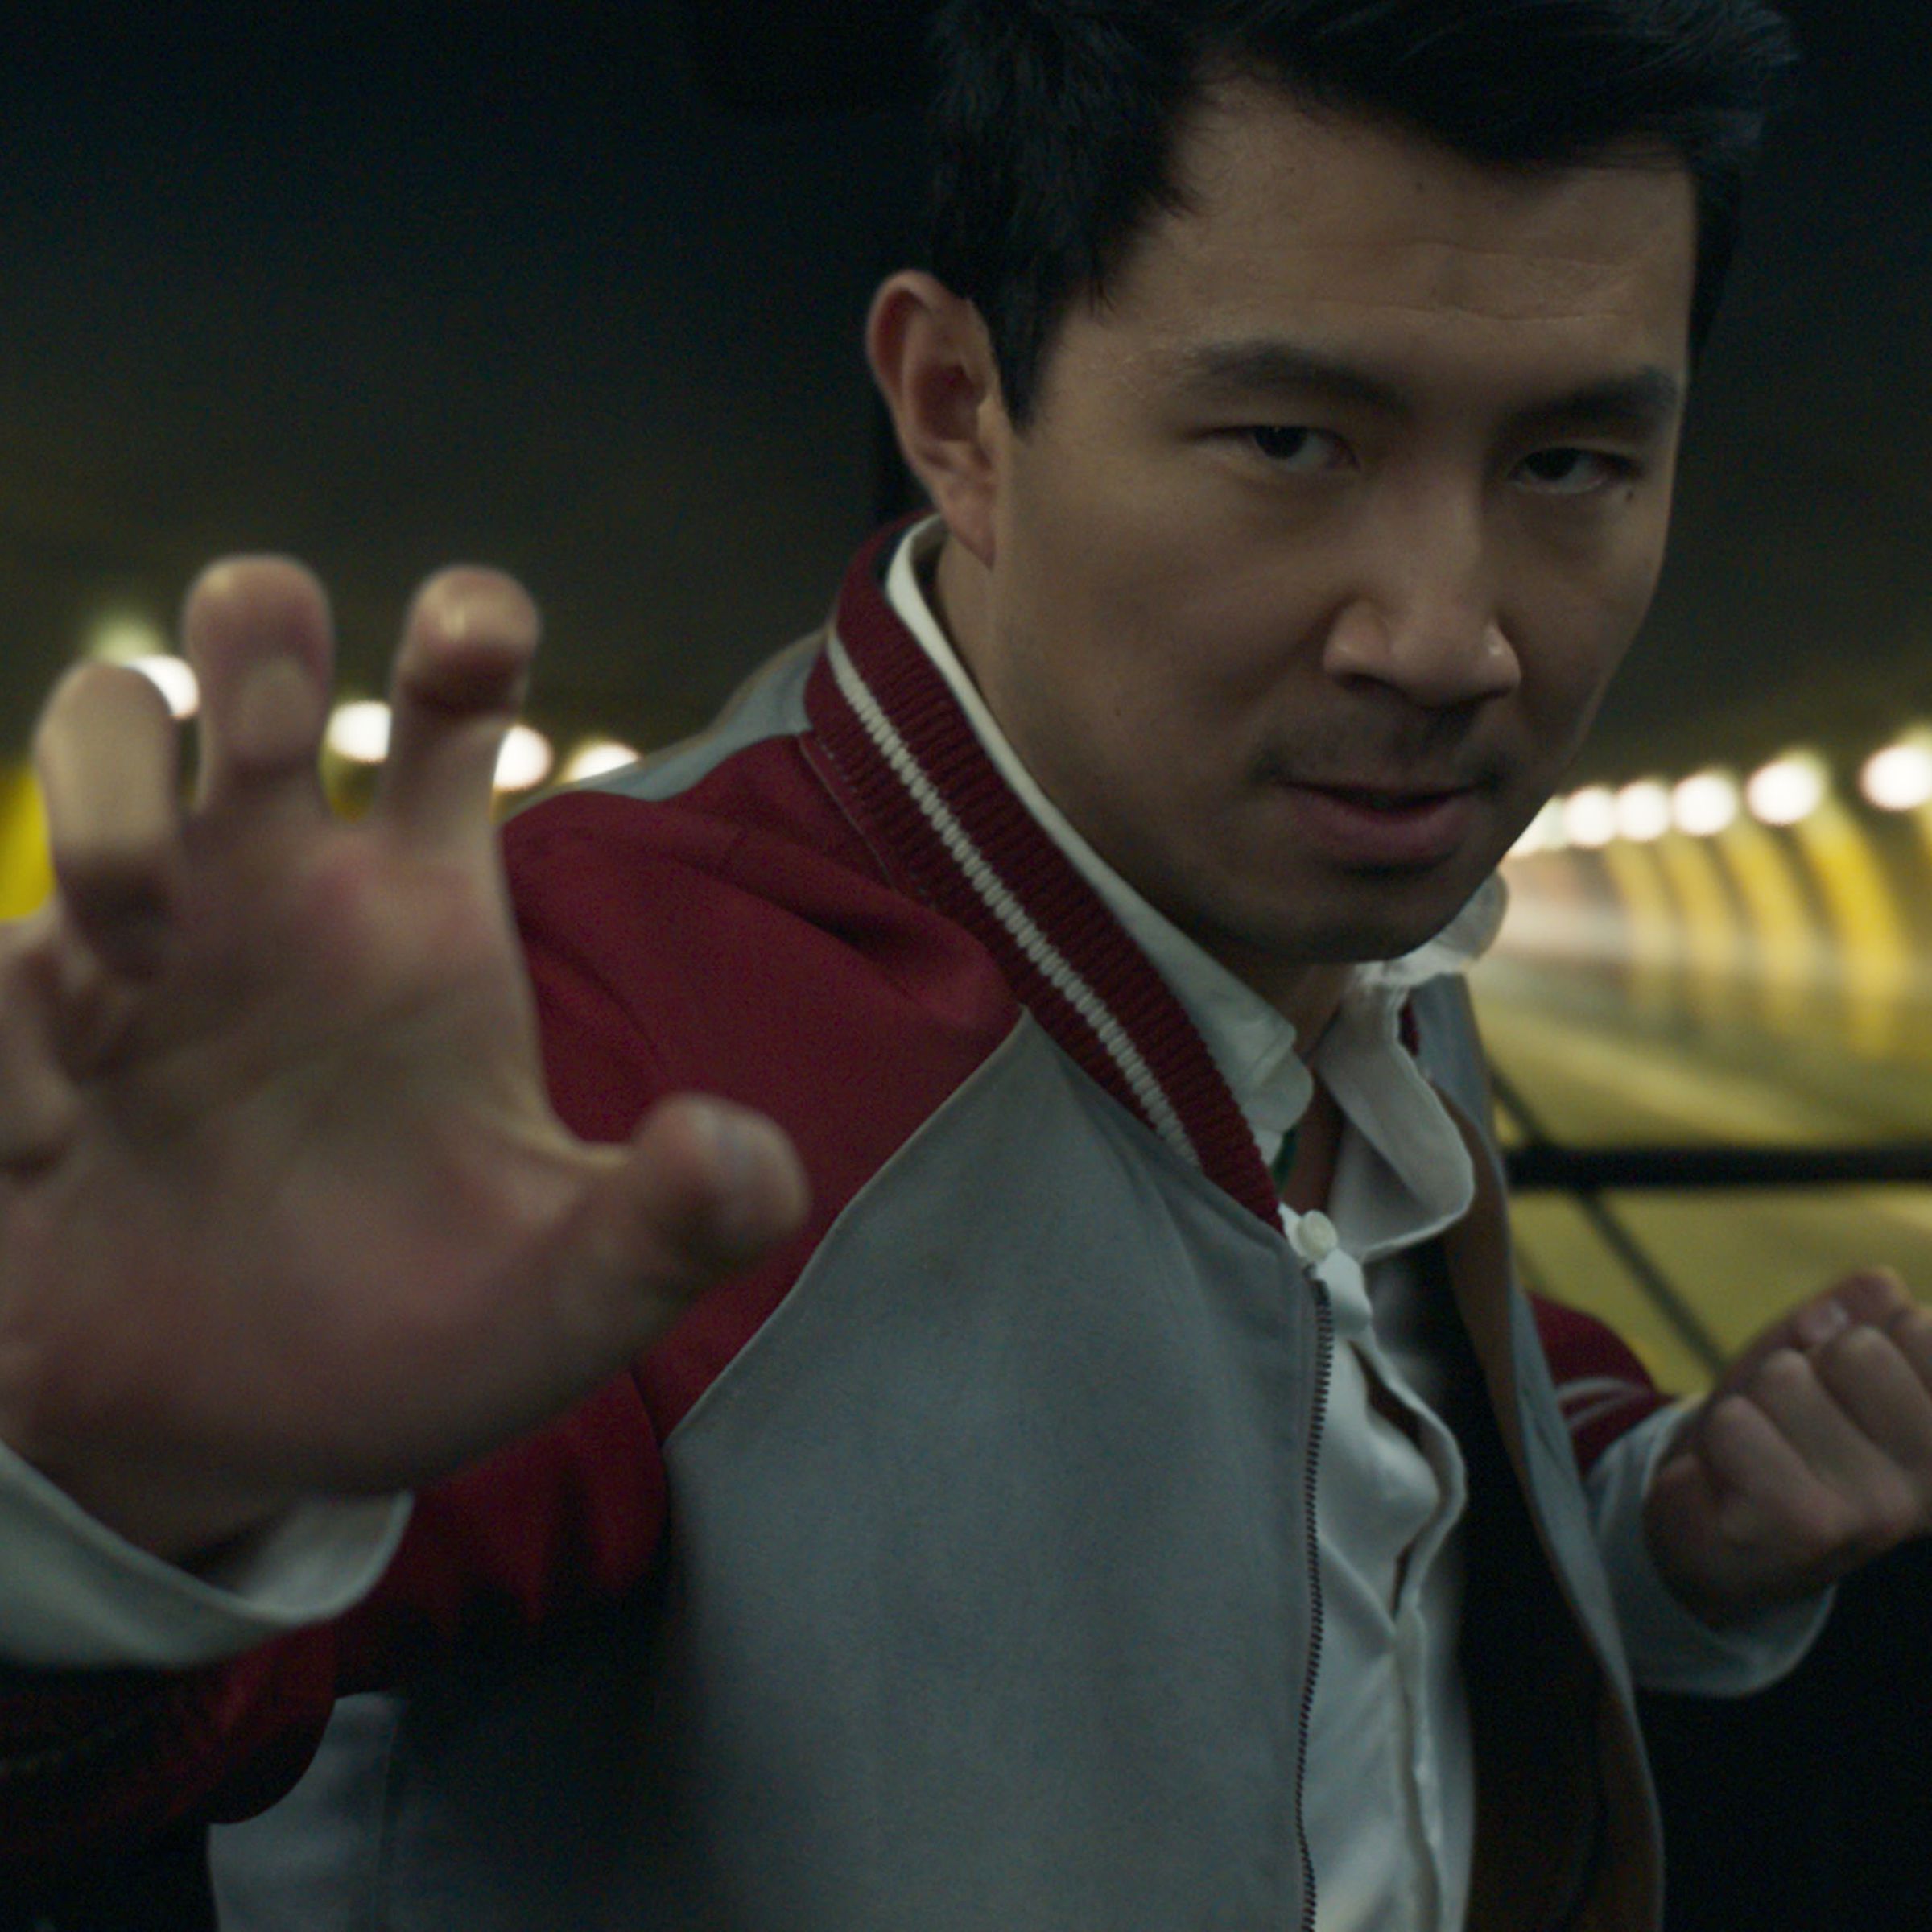 Actor Simu Liu in a fighting pose.